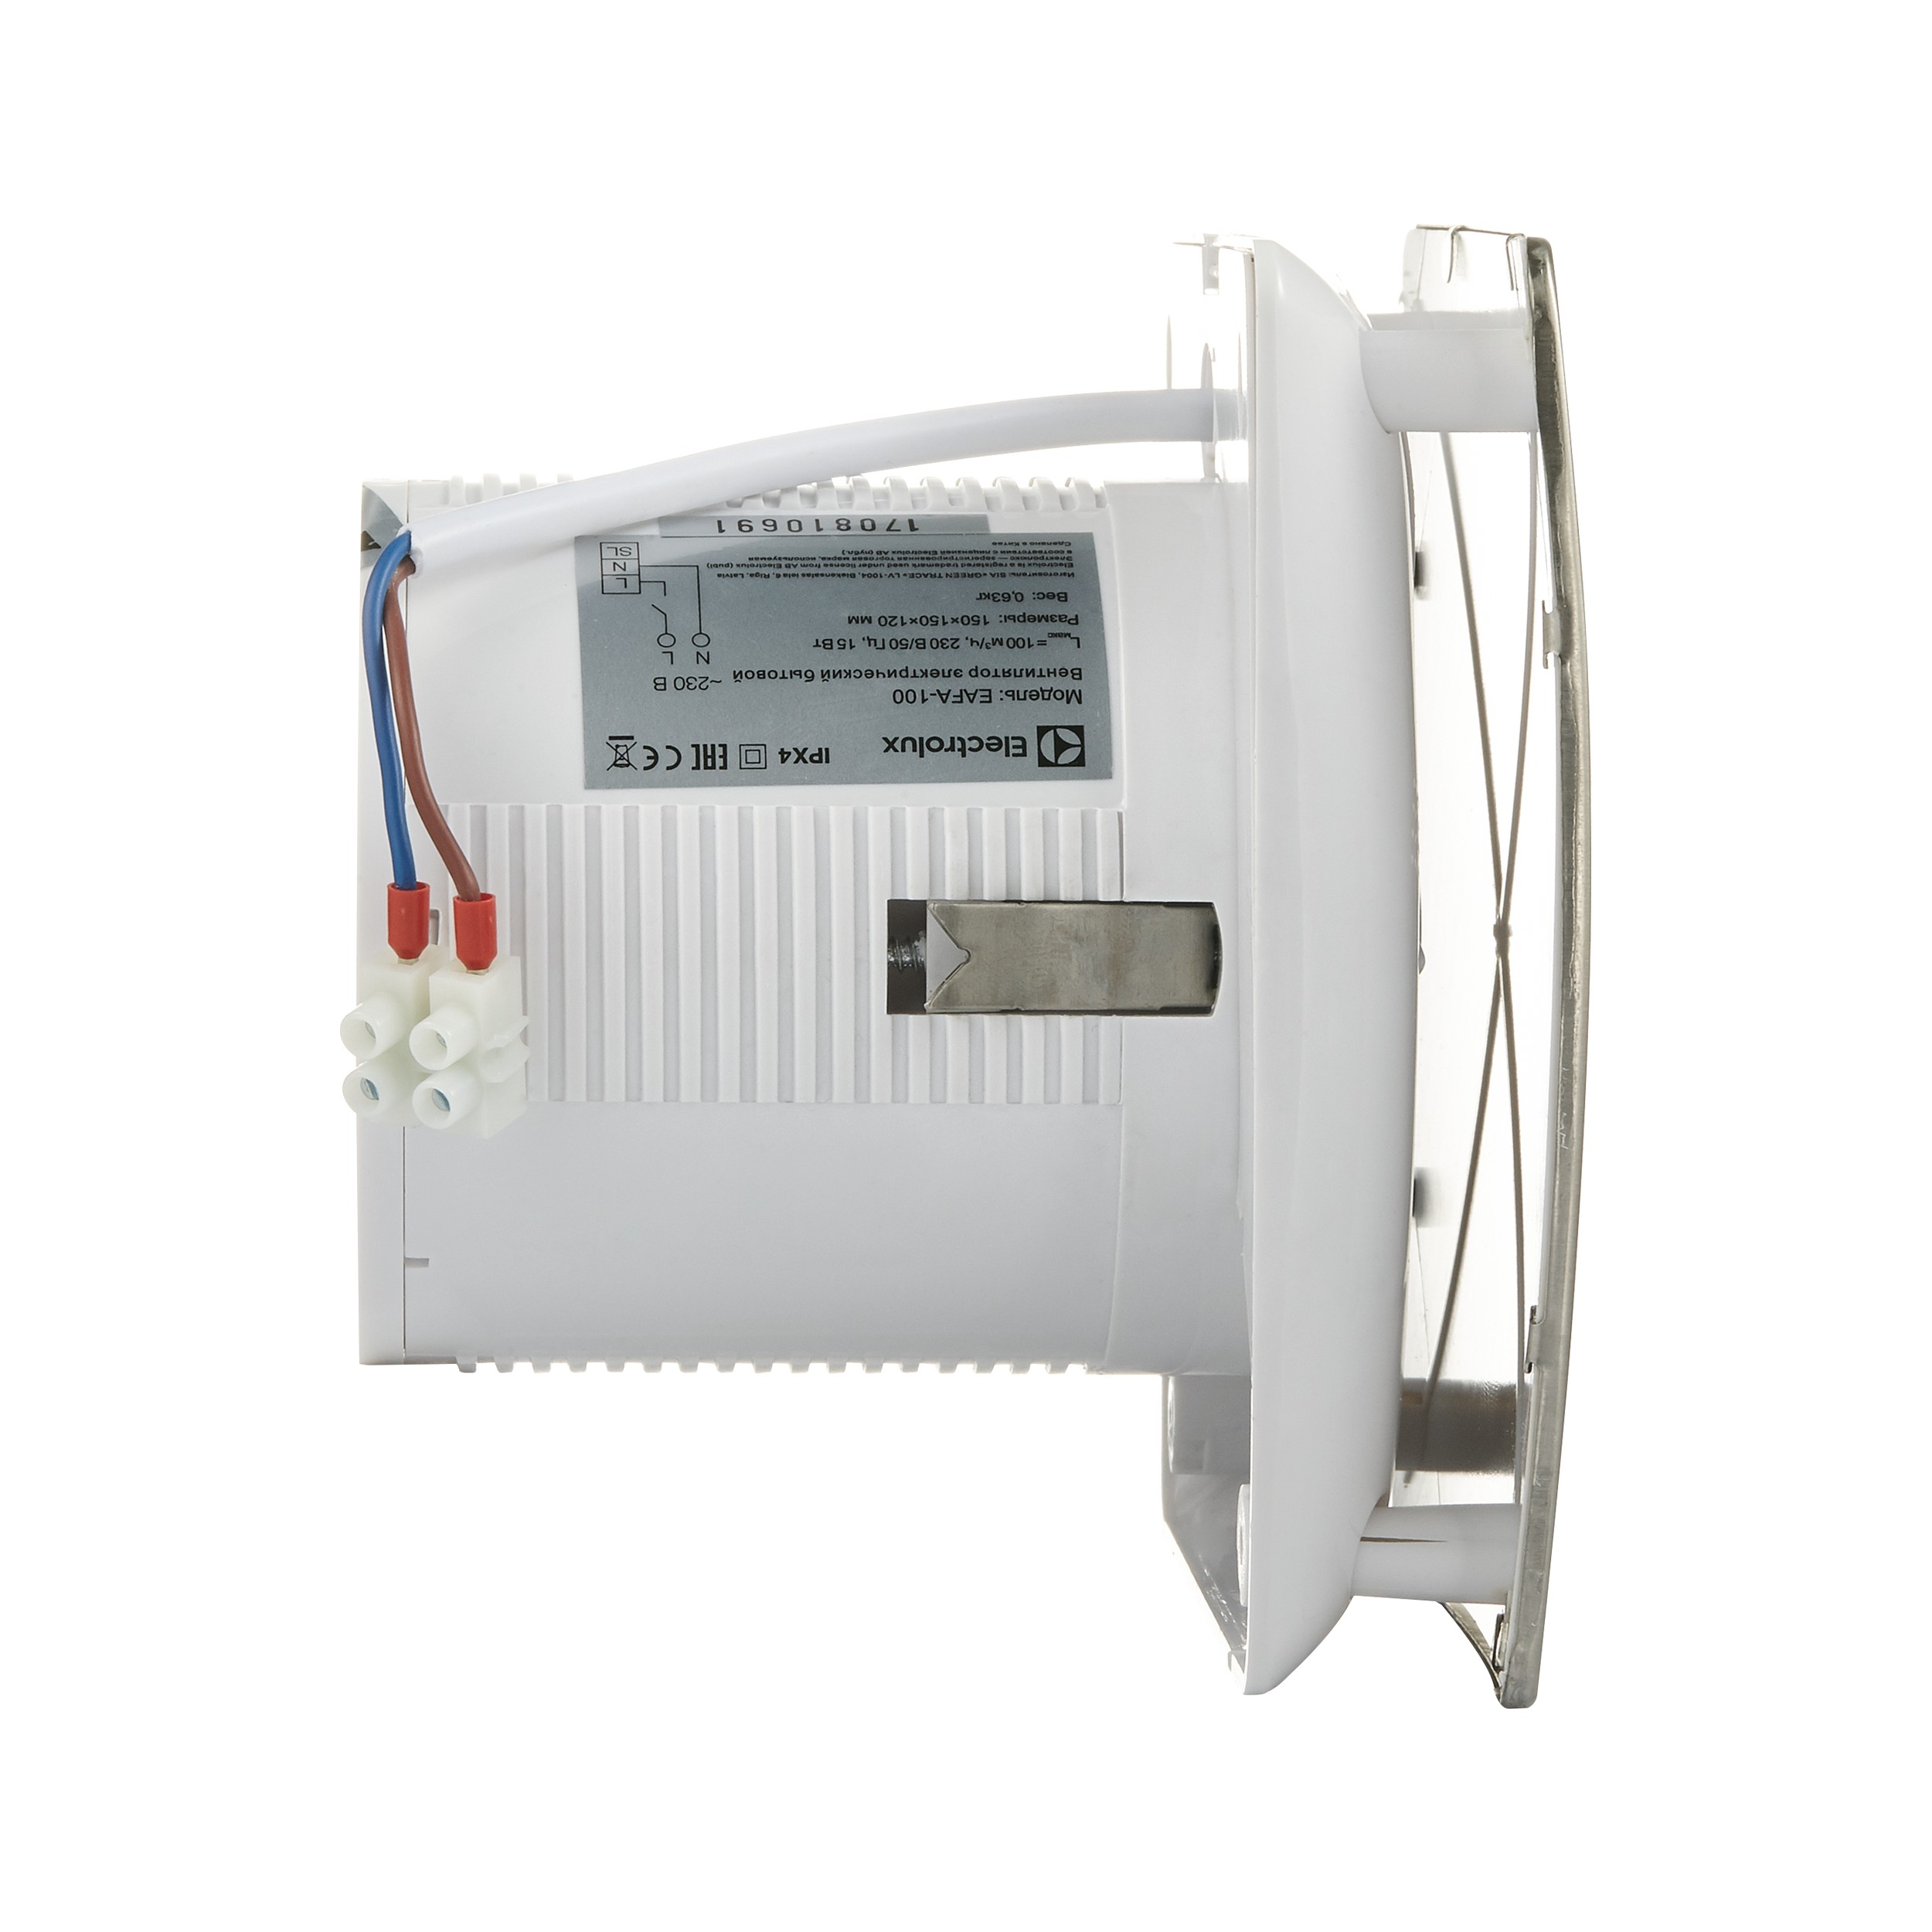 Вытяжной вентилятор Electrolux Argentum EAFA-100 отзывы - изображения 5